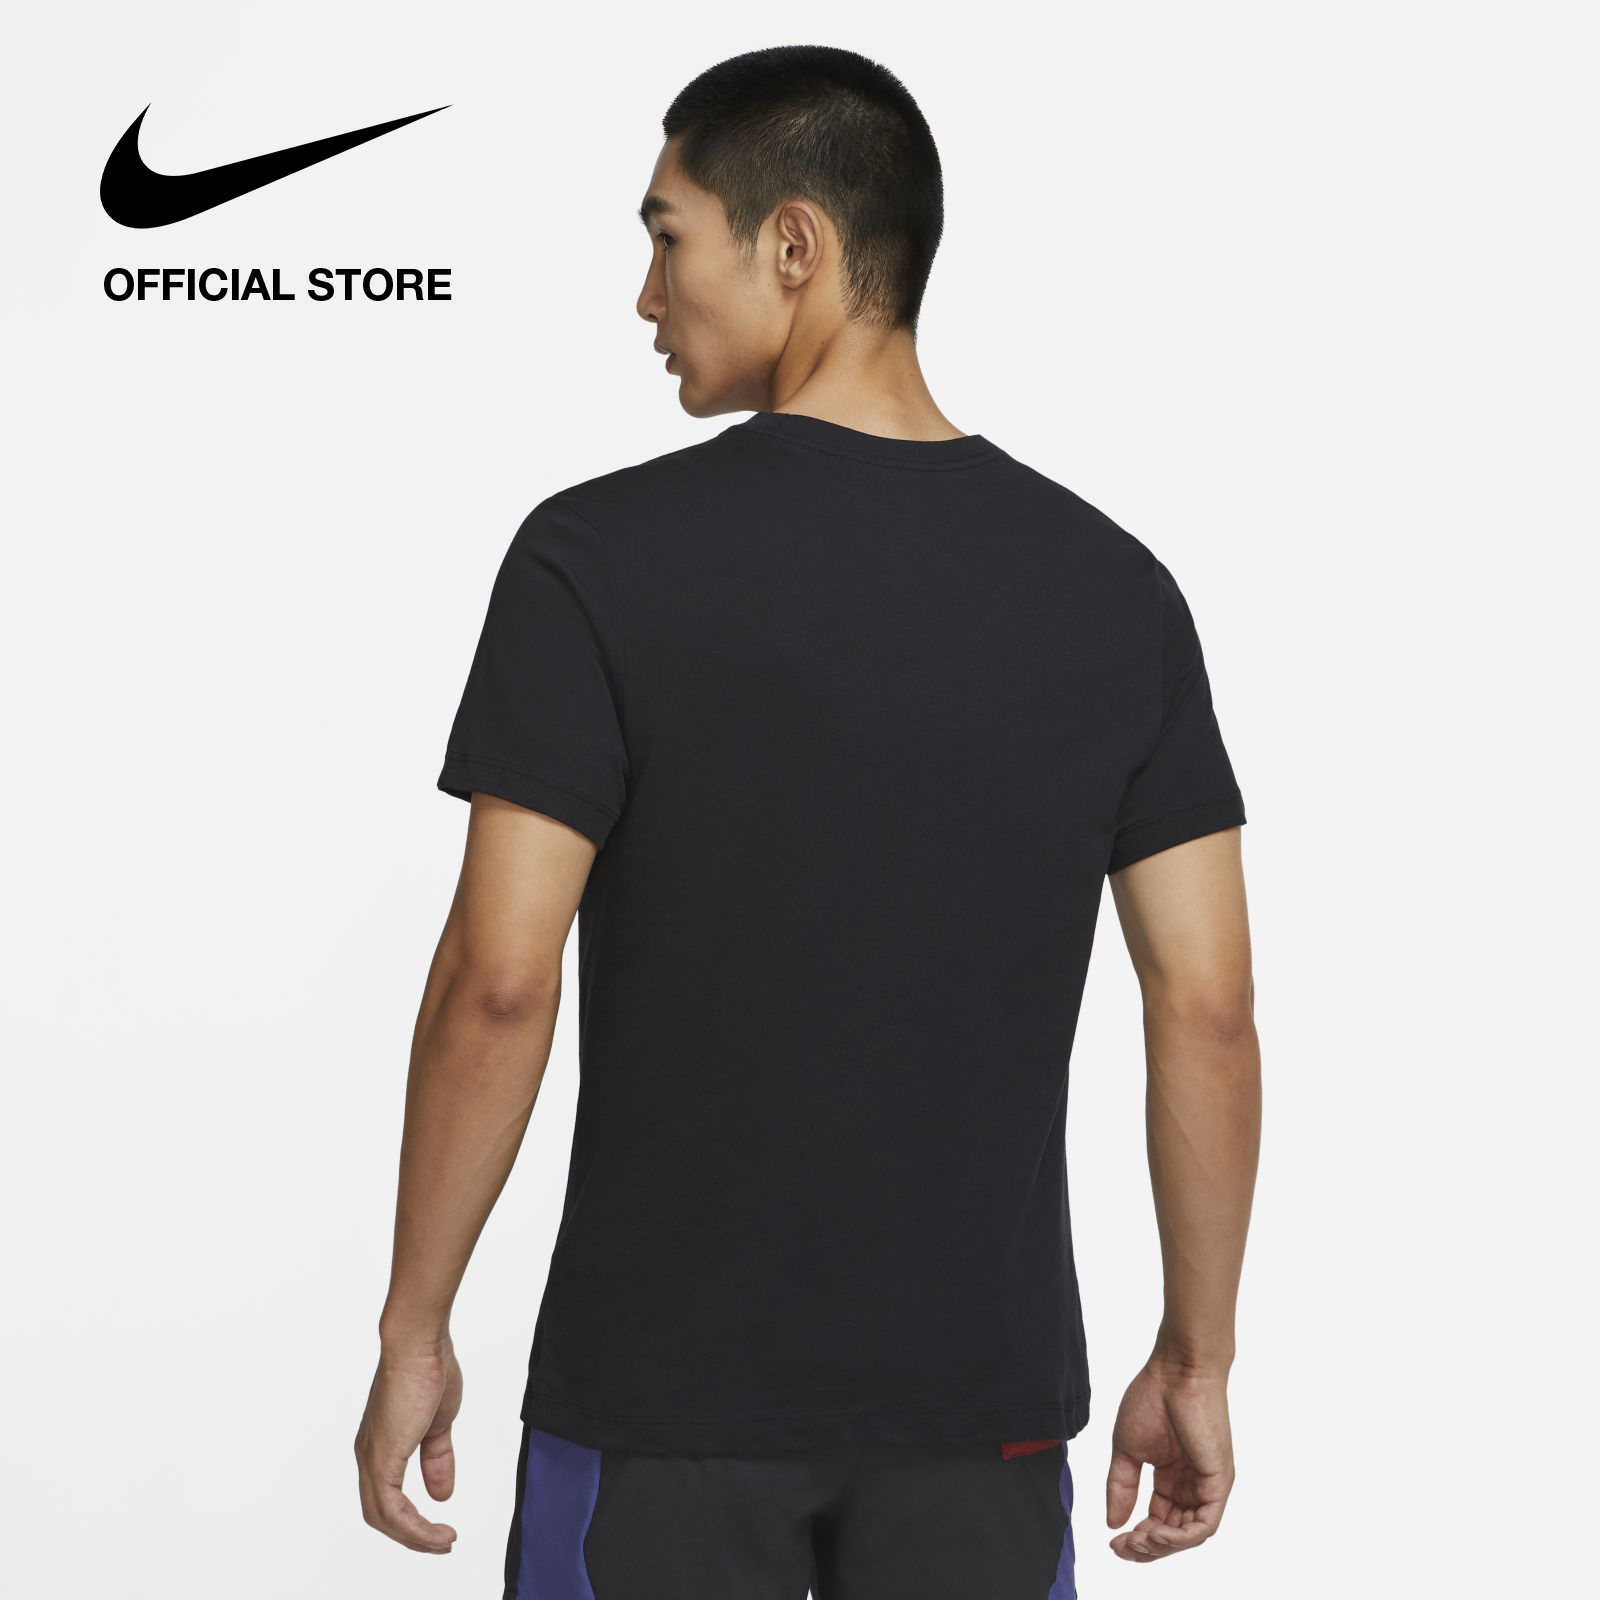 Nike Men's Dri-FIT T-Shirt - Black  เสื้อยืดผู้ชาย Nike Dri-FIT - สีดำ